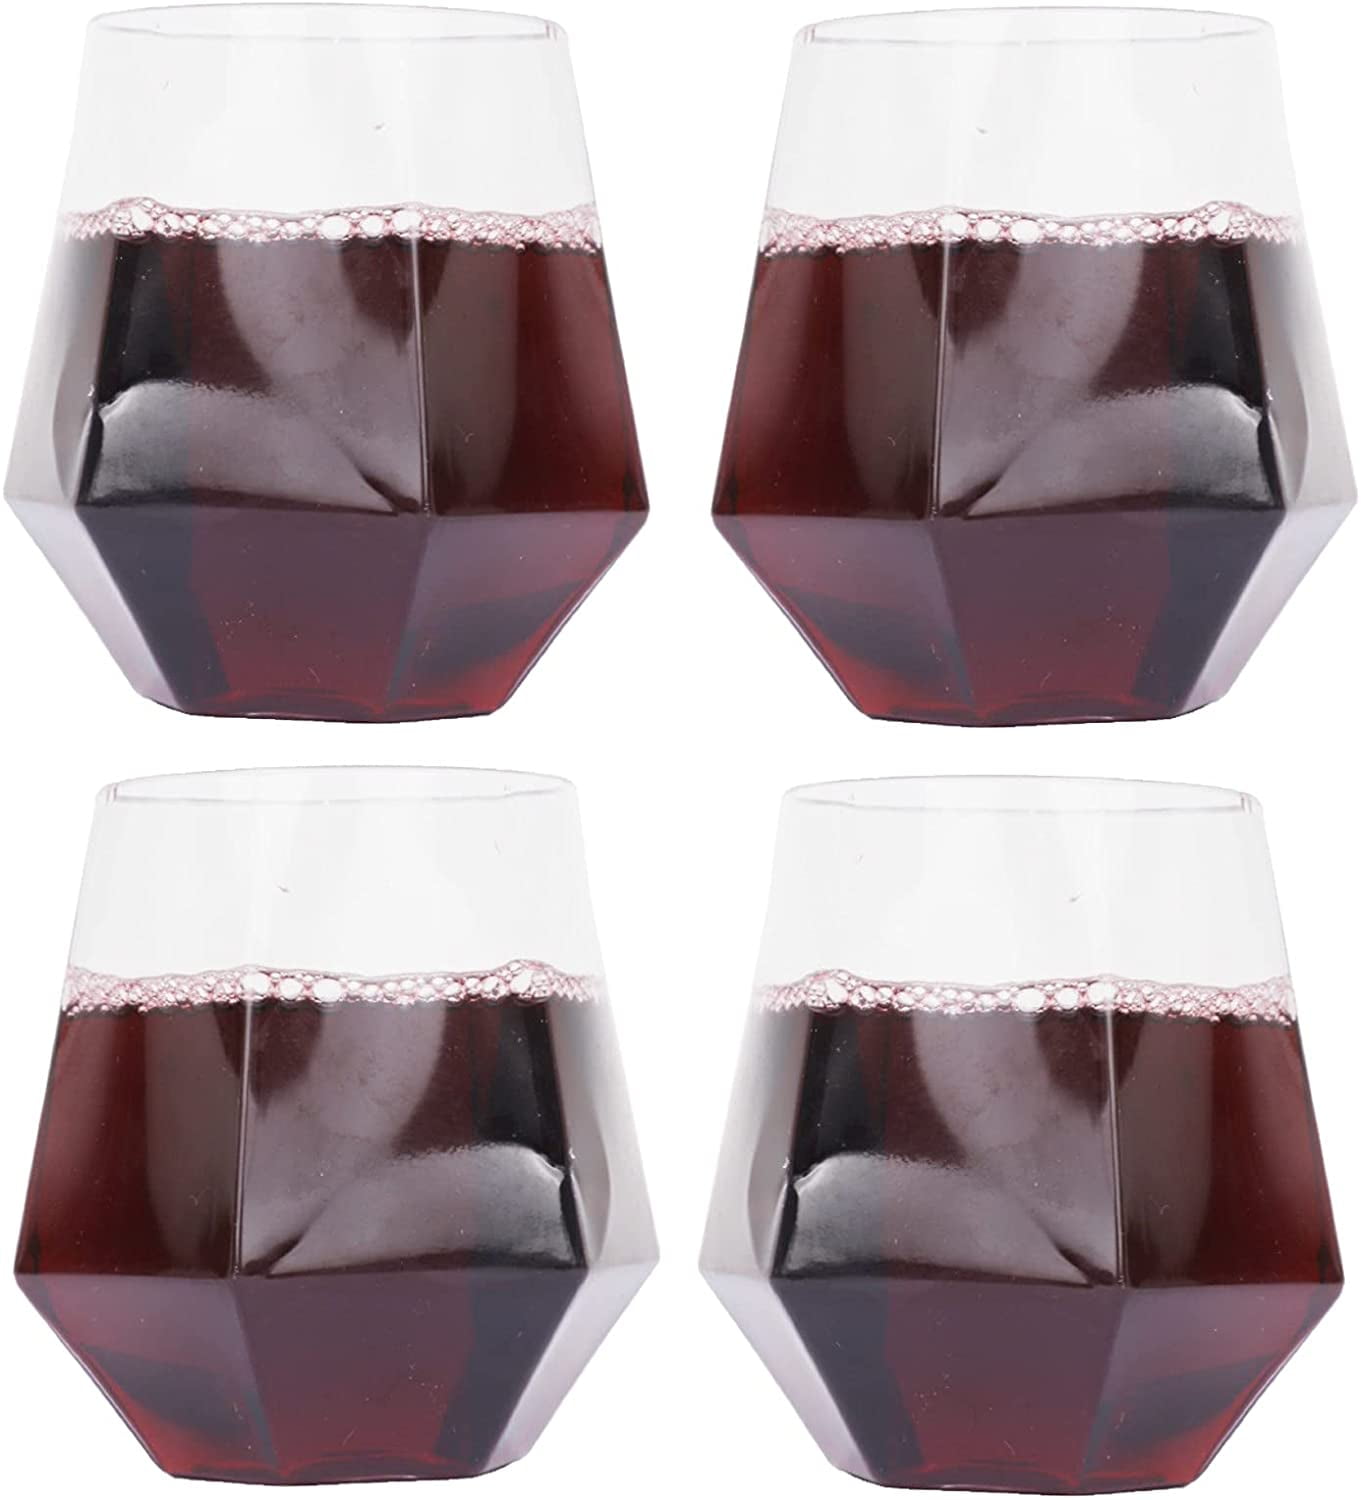 BENETI Premium Stemless Wine Glass | 18oz European Made Stemless Wine  Glasses set 4 | Crystal Glass …See more BENETI Premium Stemless Wine Glass  